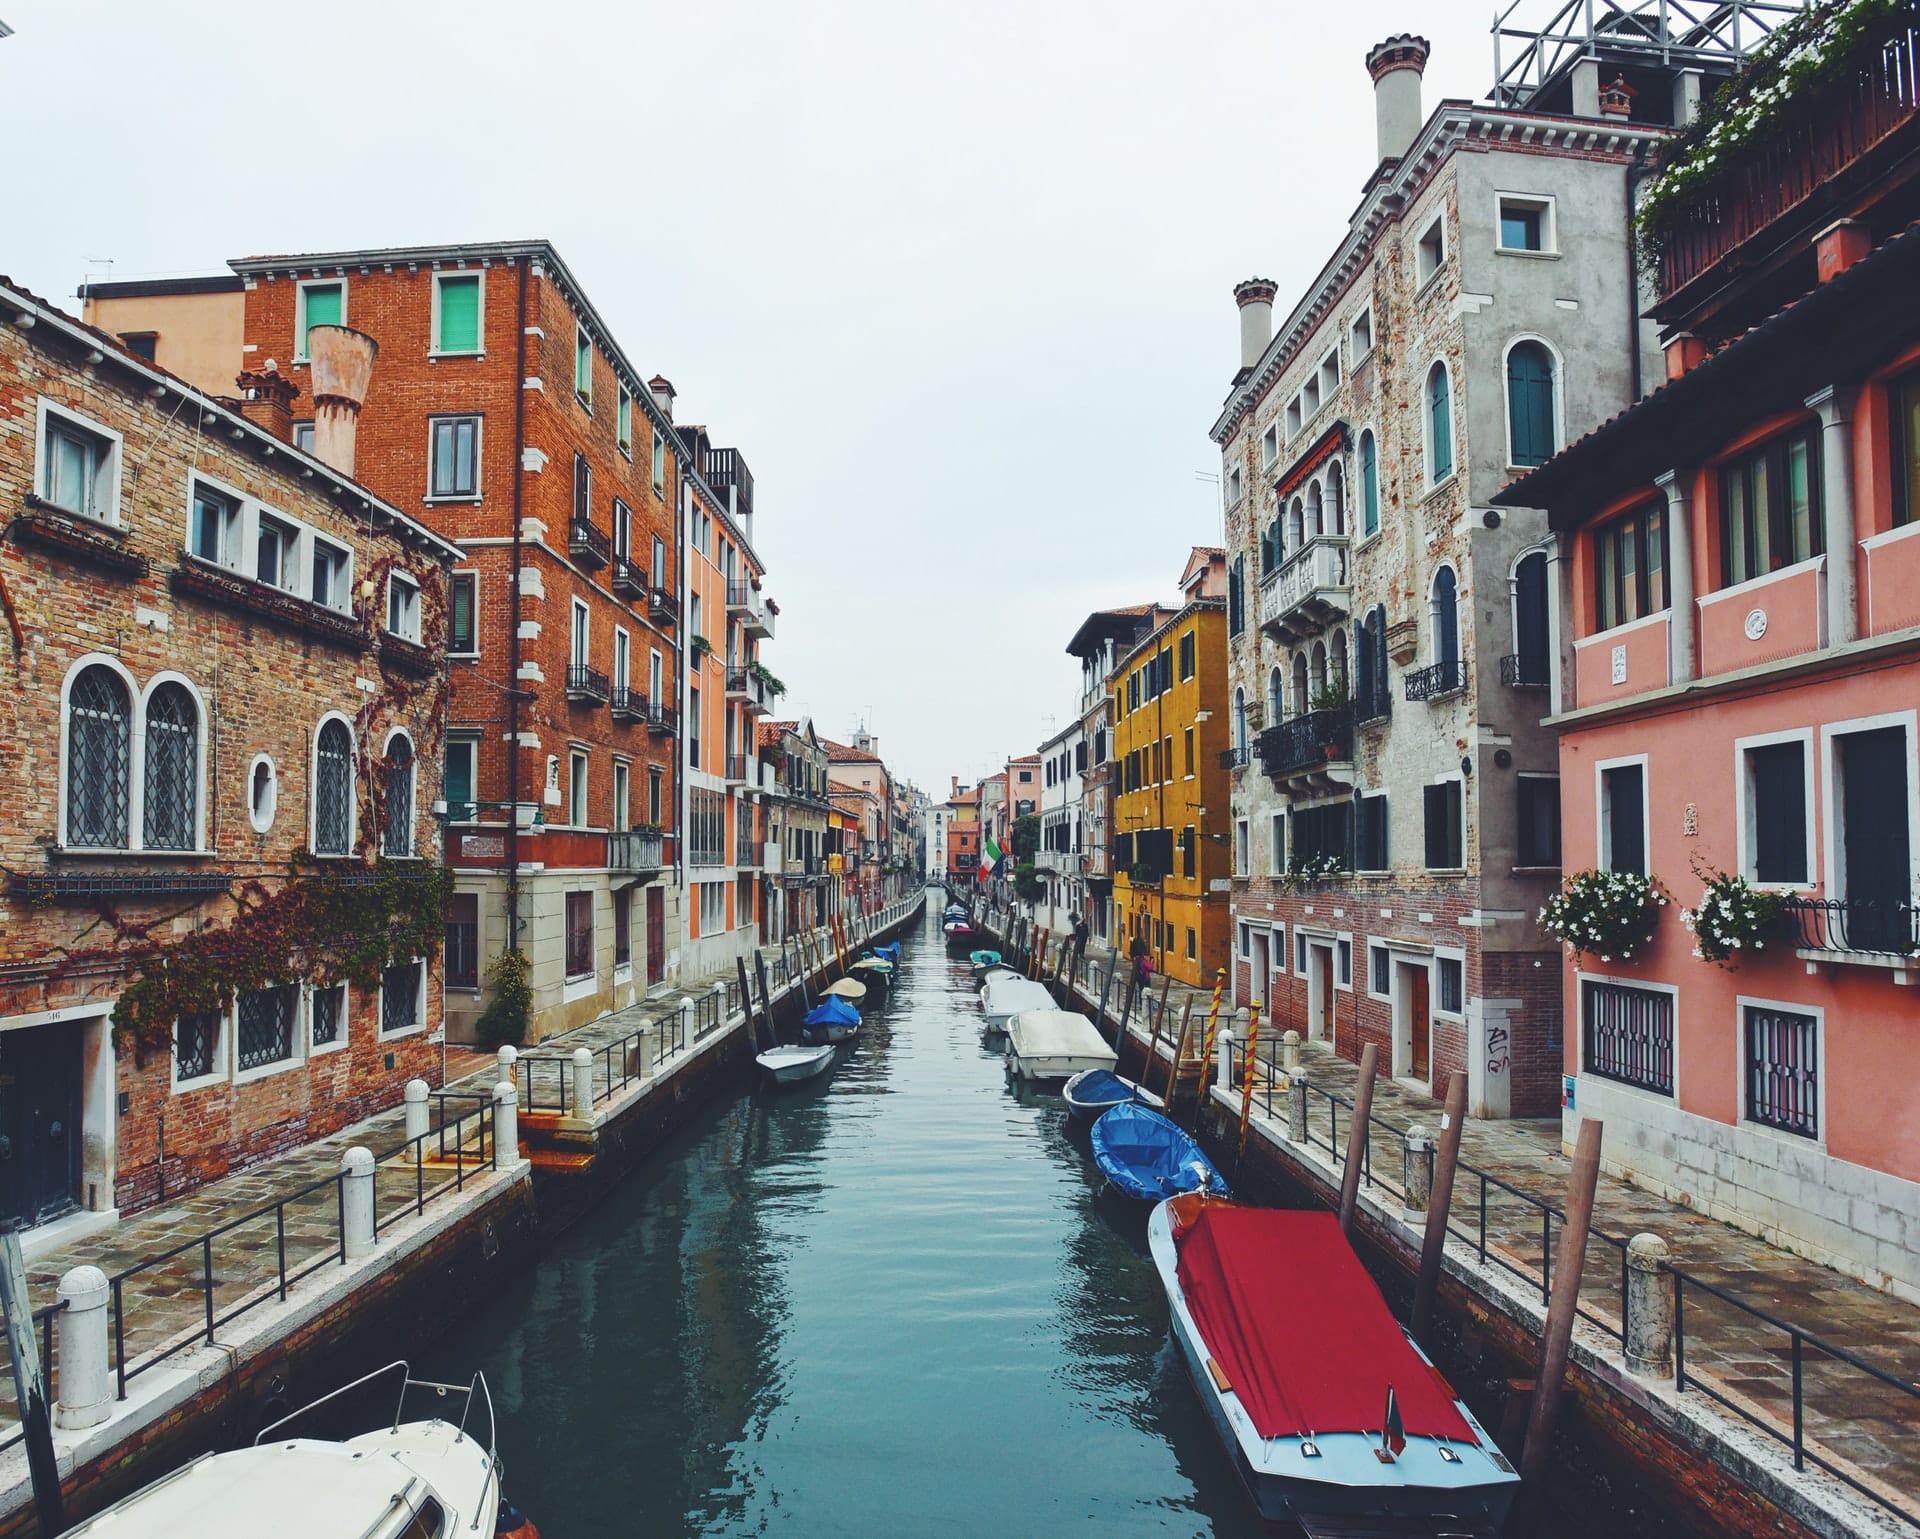 Situada en el extremo sur de Venecia, Dorsoduro es una zona tranquila para disfrutar de la esencia de Venecia lejos de las masas